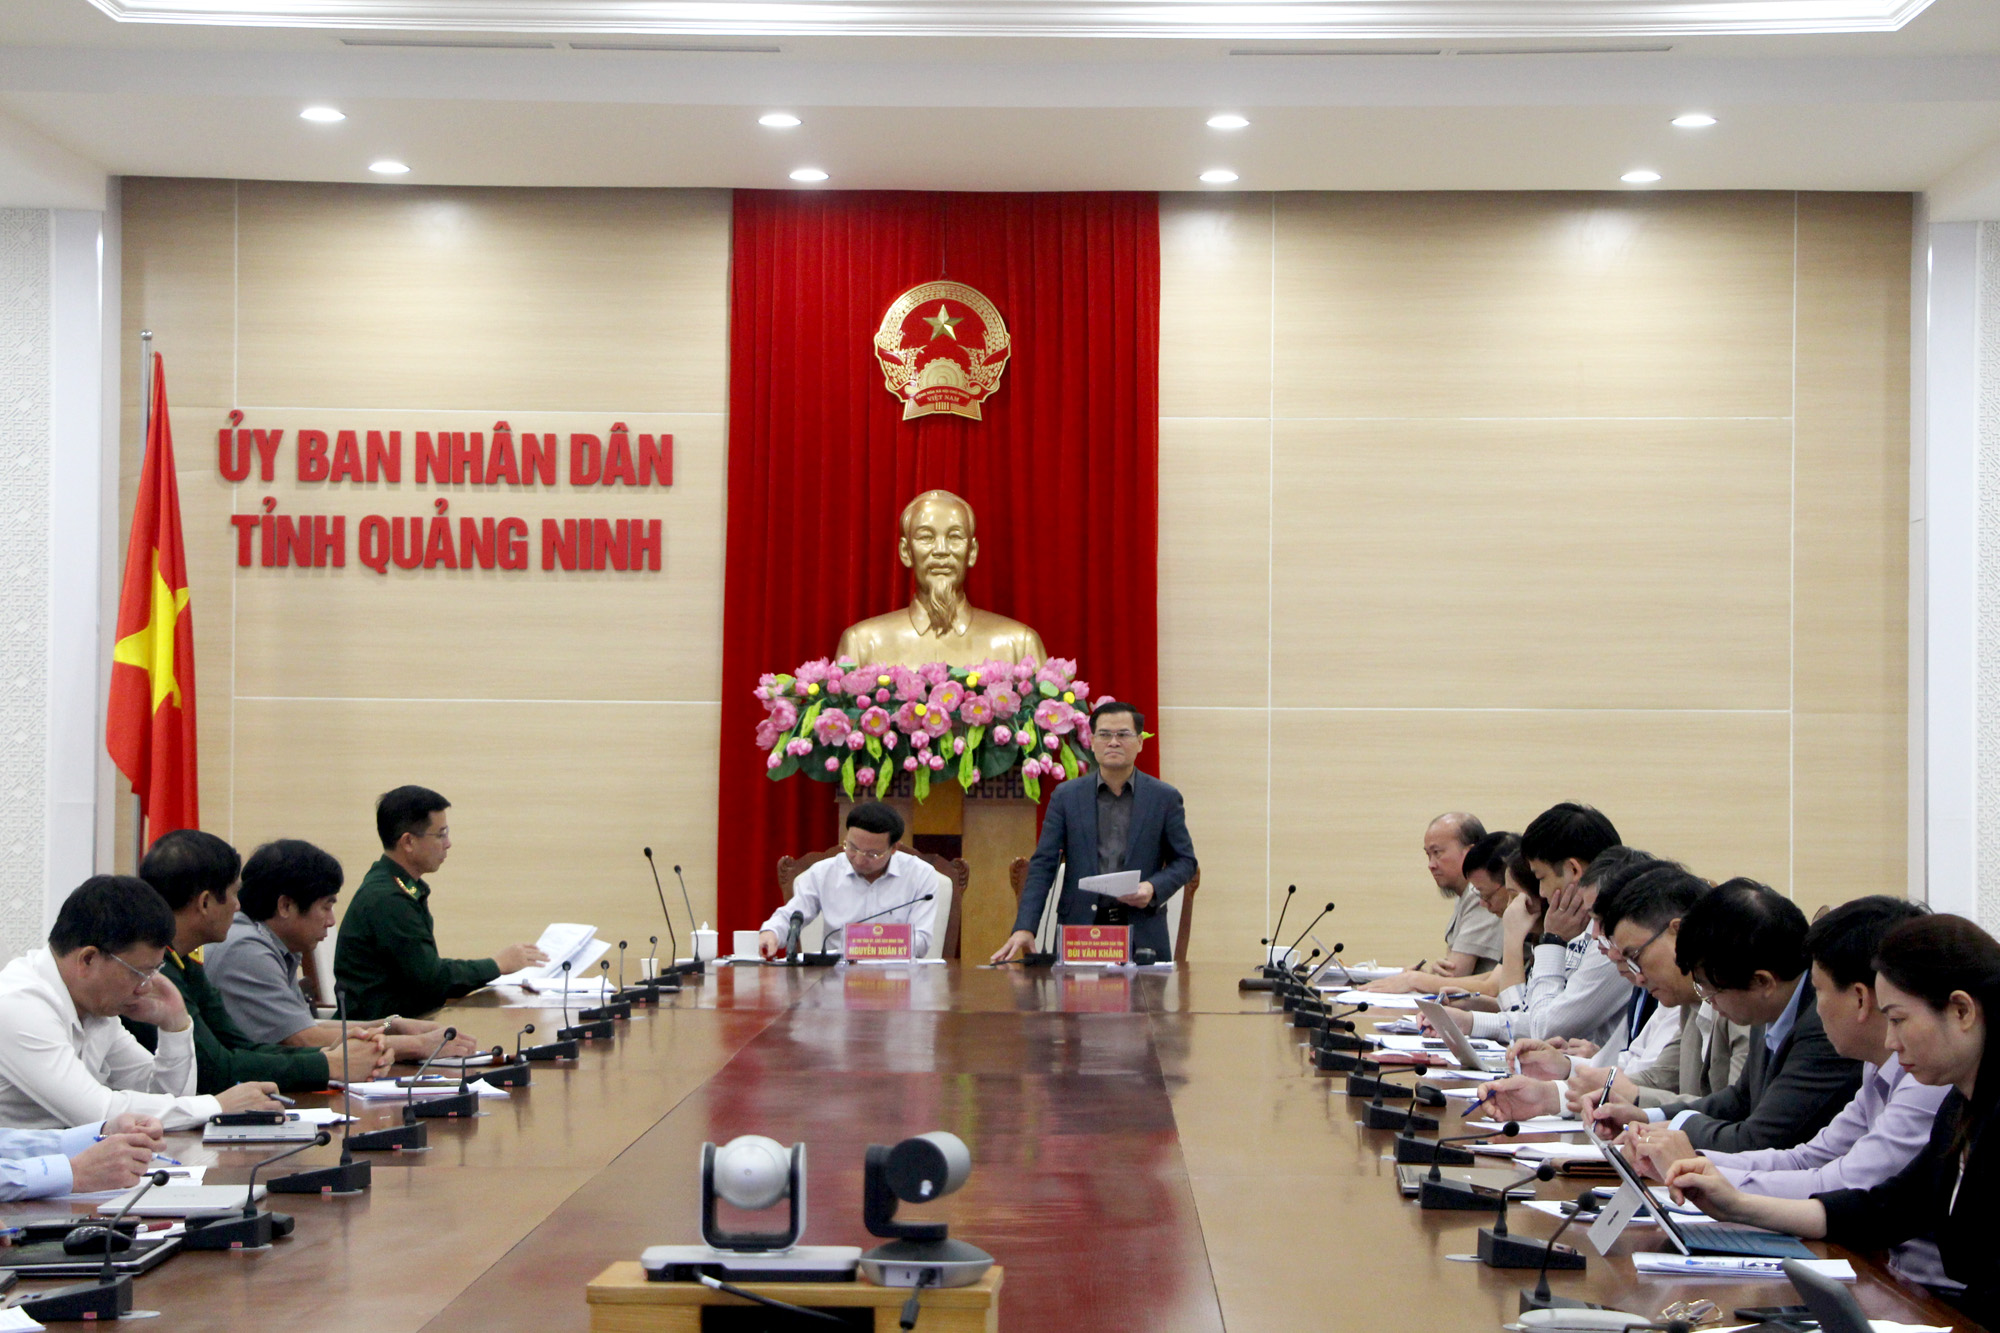 Đồng chí Bùi Văn Khắng, Phó Chủ tịch UBND tỉnh, phát biểu kết luận cuộc họp.